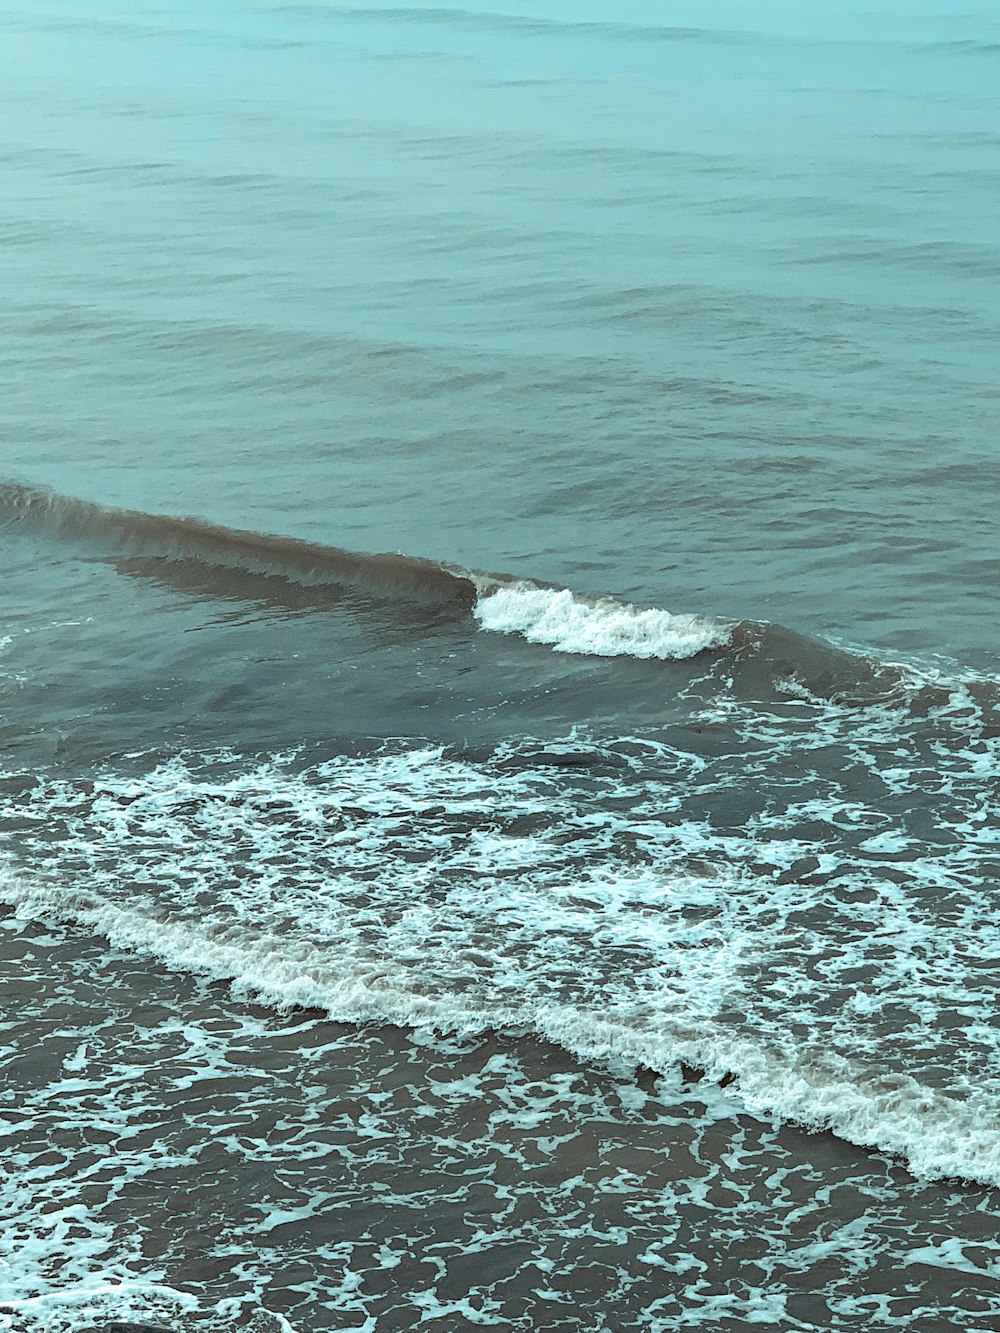 Un homme sur une planche de surf au sommet d’une vague dans l’océan